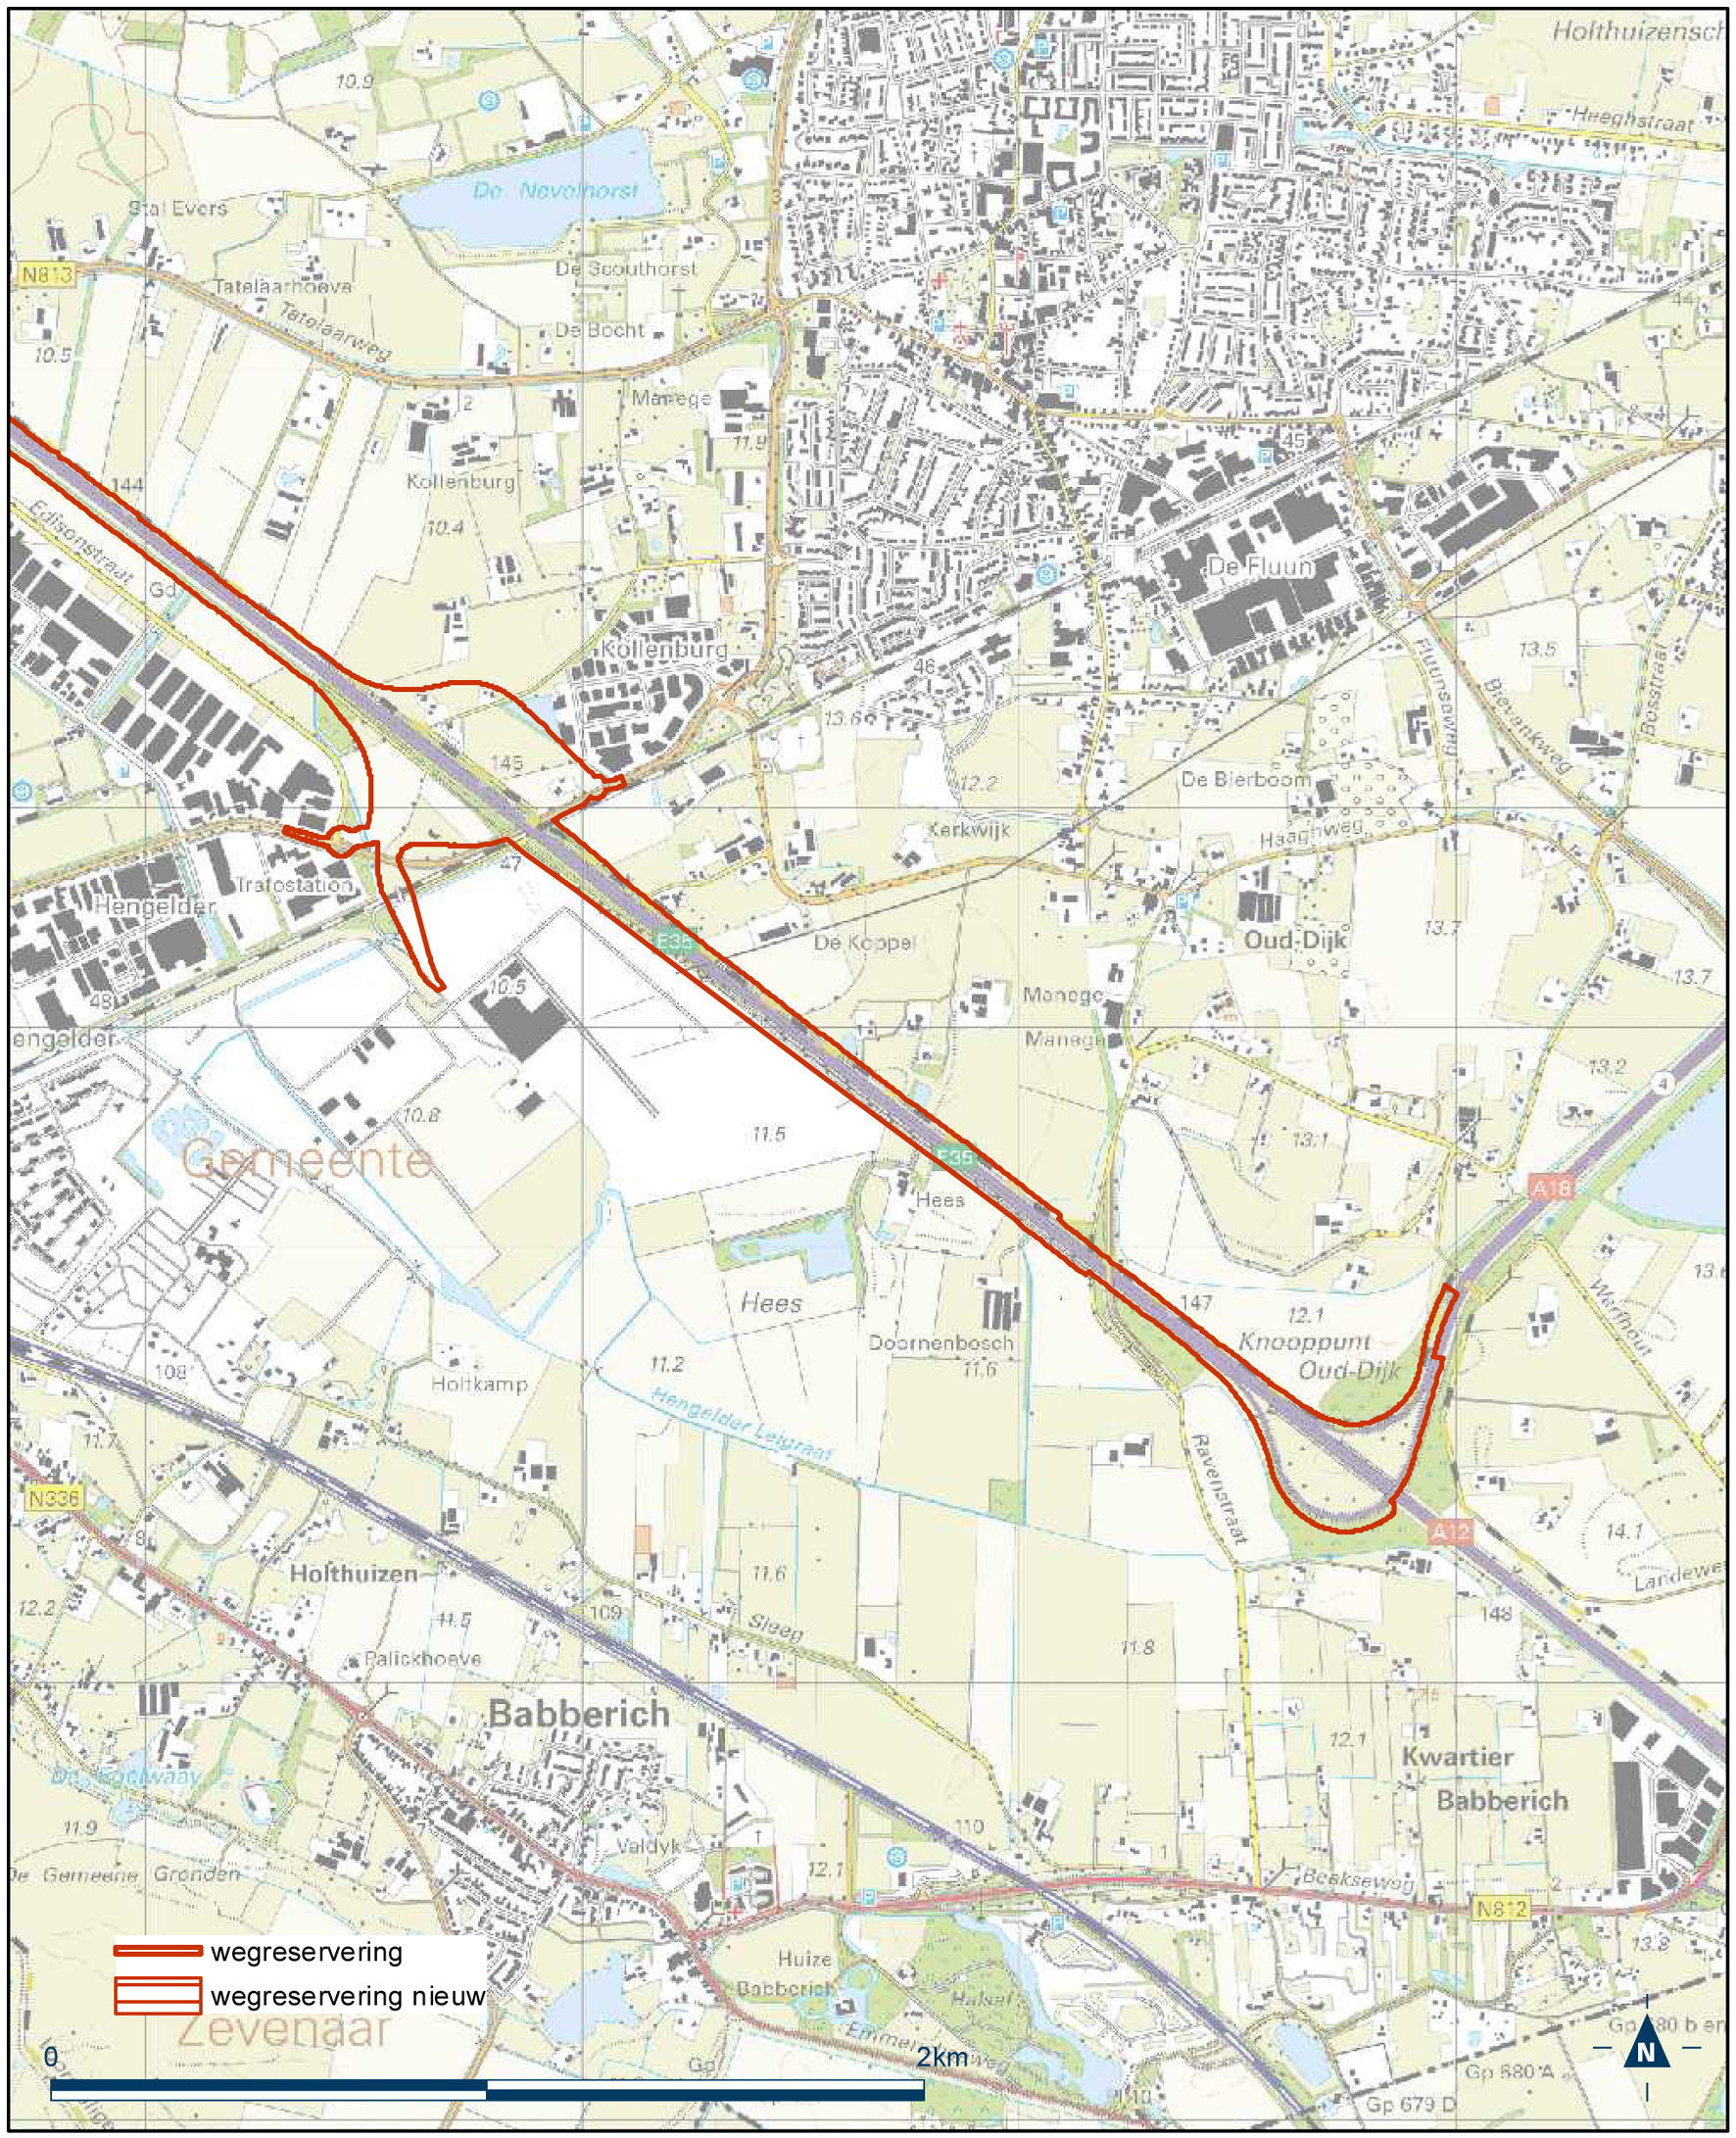 Detailkaart 14 reserveringsgebied nieuwe hoofdweg A12/A15 bereikbaarheid regio Arnhem-Nijmegen